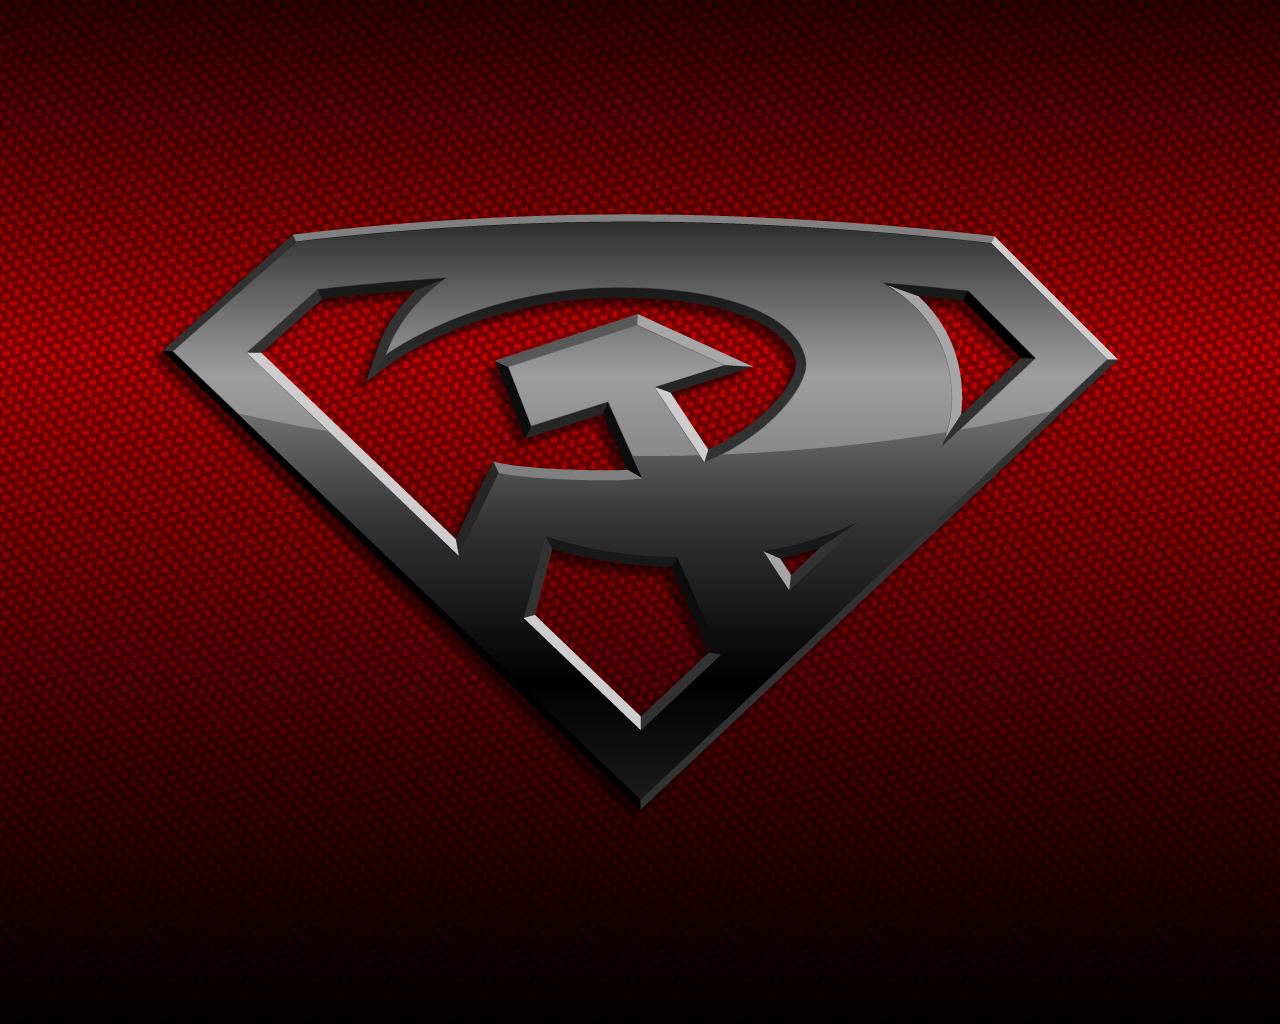 Скачать обои Супермен: Красный Сын на телефон бесплатно